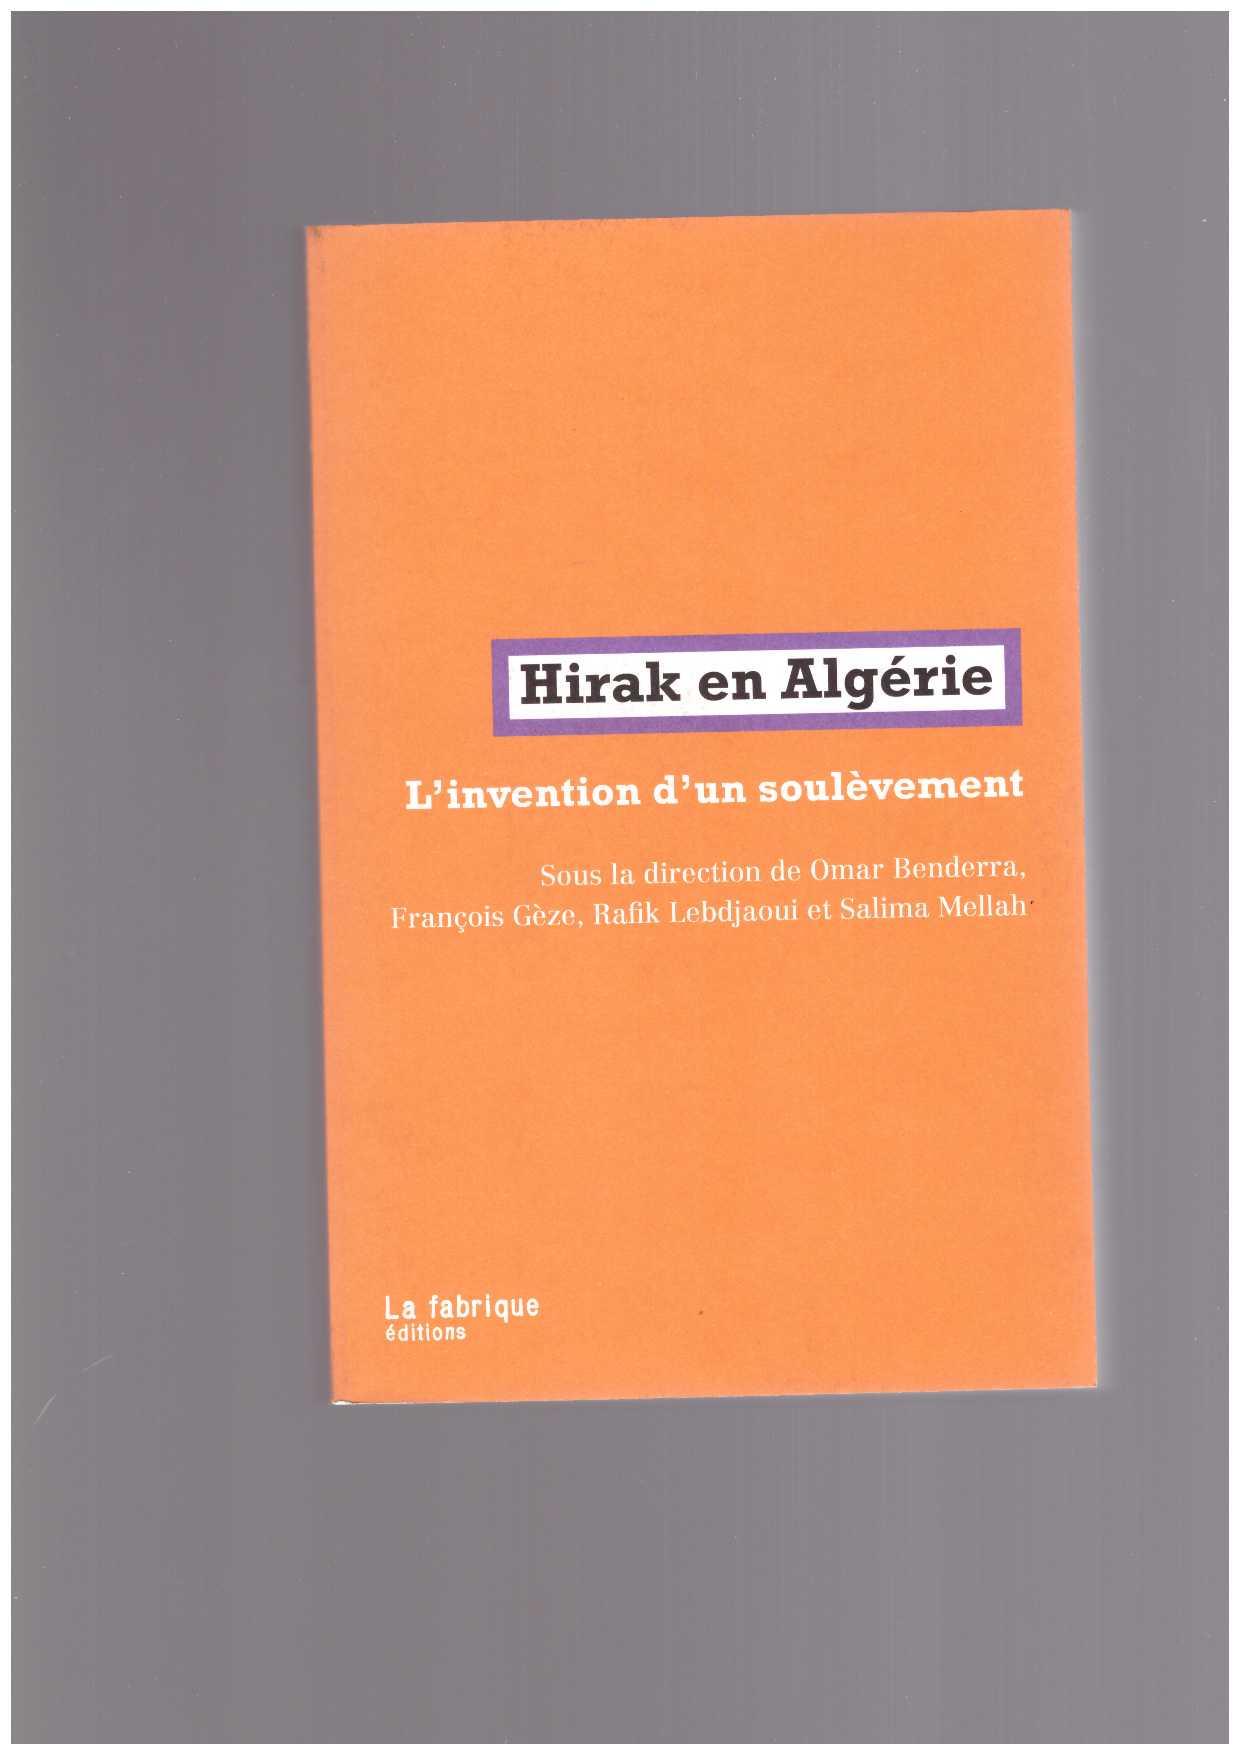 BENDERRA, Omar; GÈZE, François; LEBDJAOUI, Rafik; MELLAH, Salima (eds.) - Hirak en Algérie